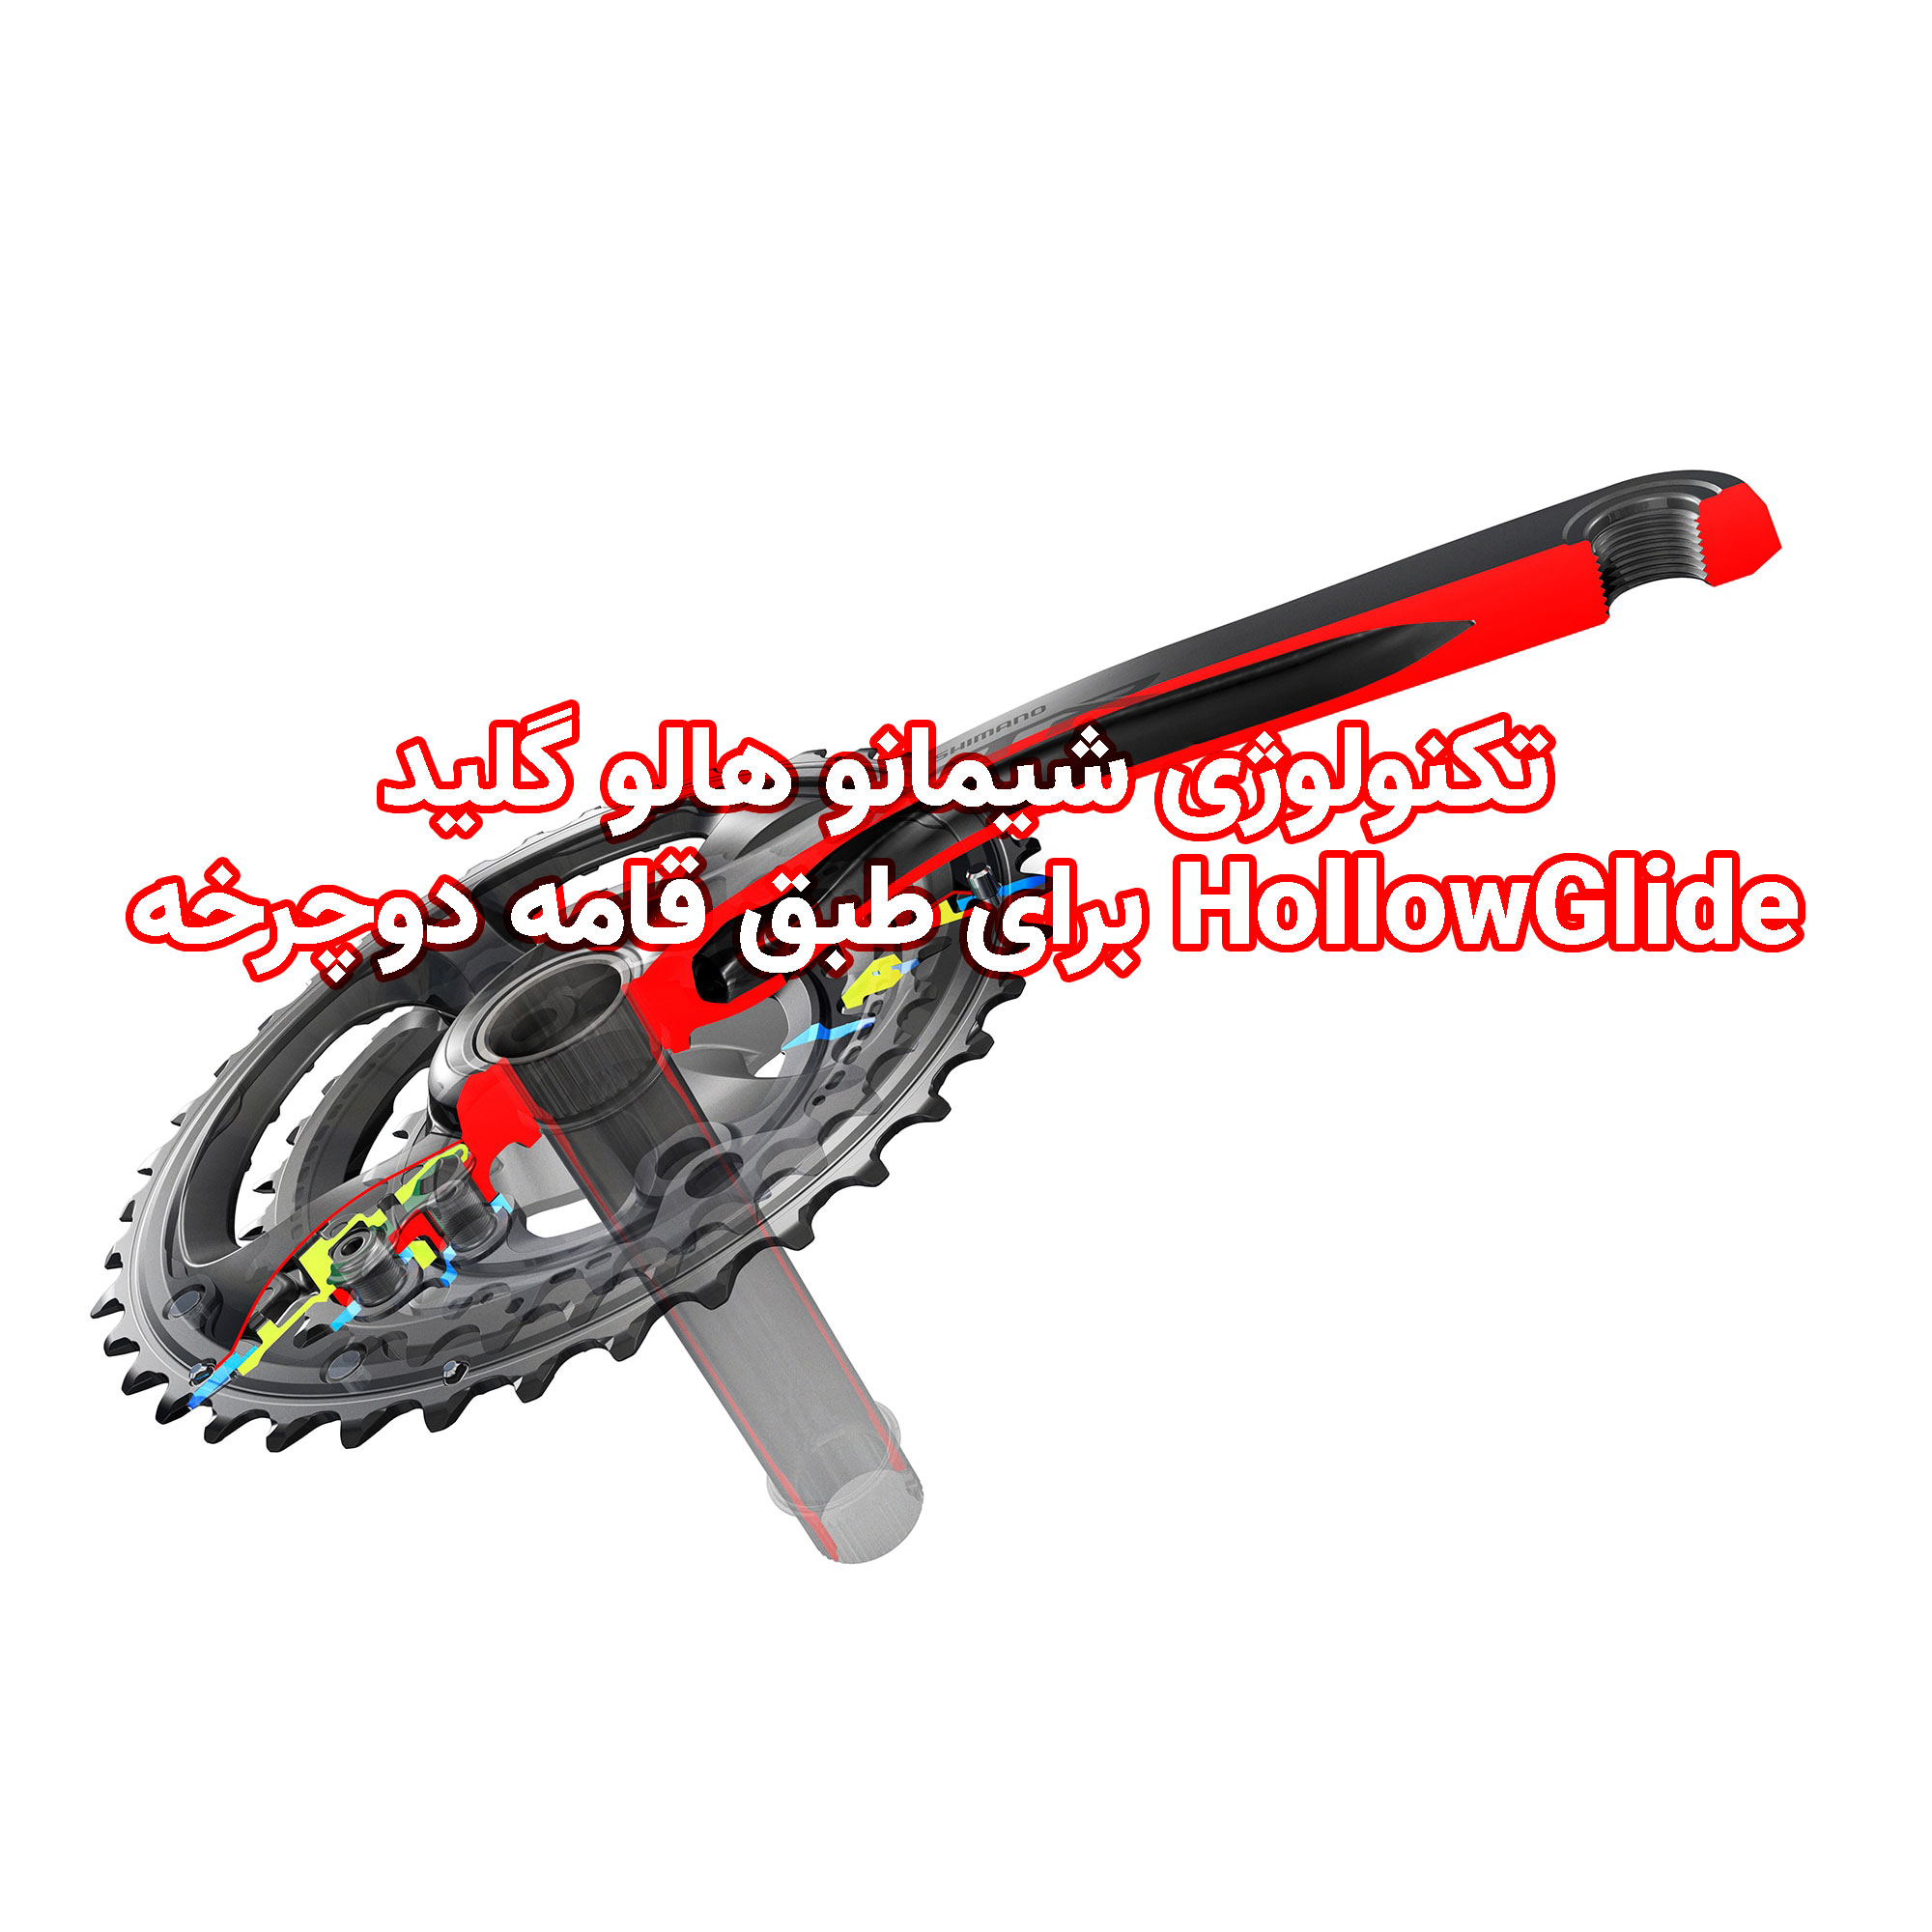 تکنولوژی شیمانو هالو گلید HollowGlide برای طبق قامه دوچرخه